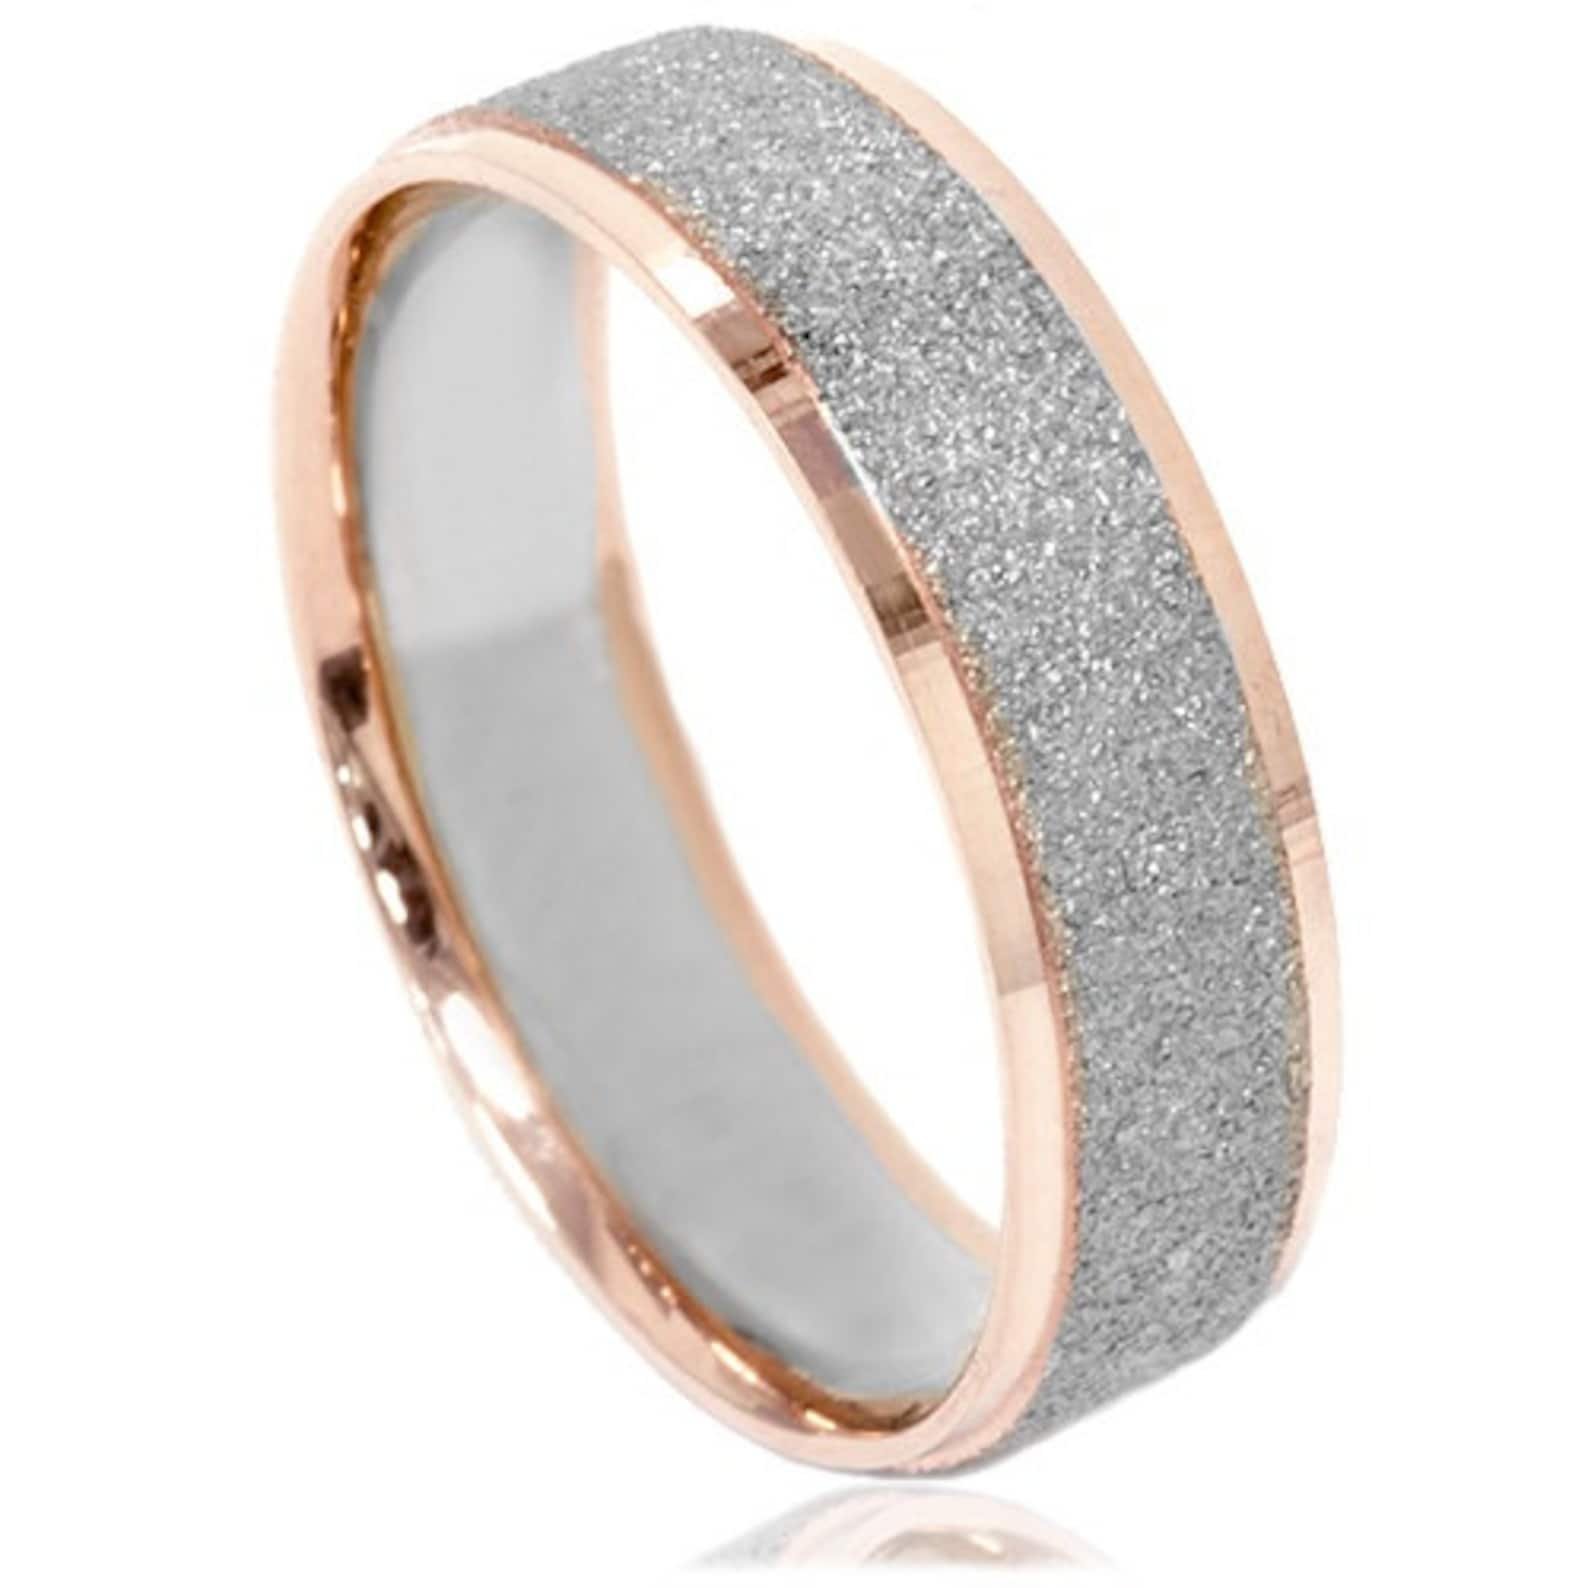 Кольцо с крошкой. Золотое кольцо обручальное с алмазной крошкой 415142. Обручальные кольца Меркури. Золотой прииск обручальные кольца. Обручальное кольцо 1385603 1 1 1 с бриллиантовой крошкой.